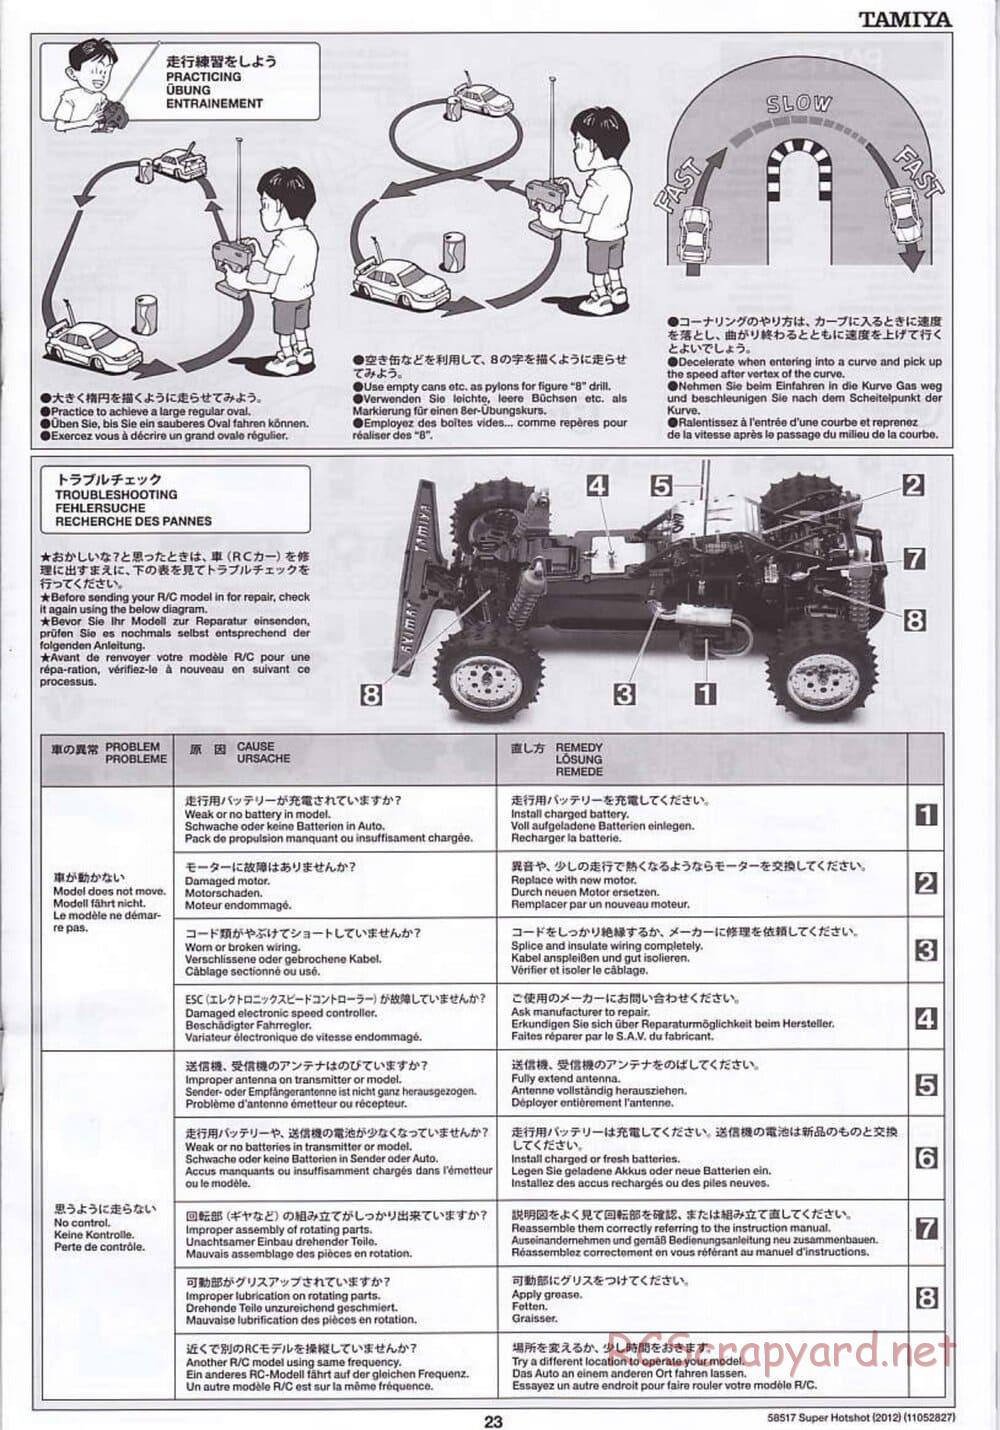 Tamiya - Super Hotshot 2012 - HS Chassis - Manual - Page 23